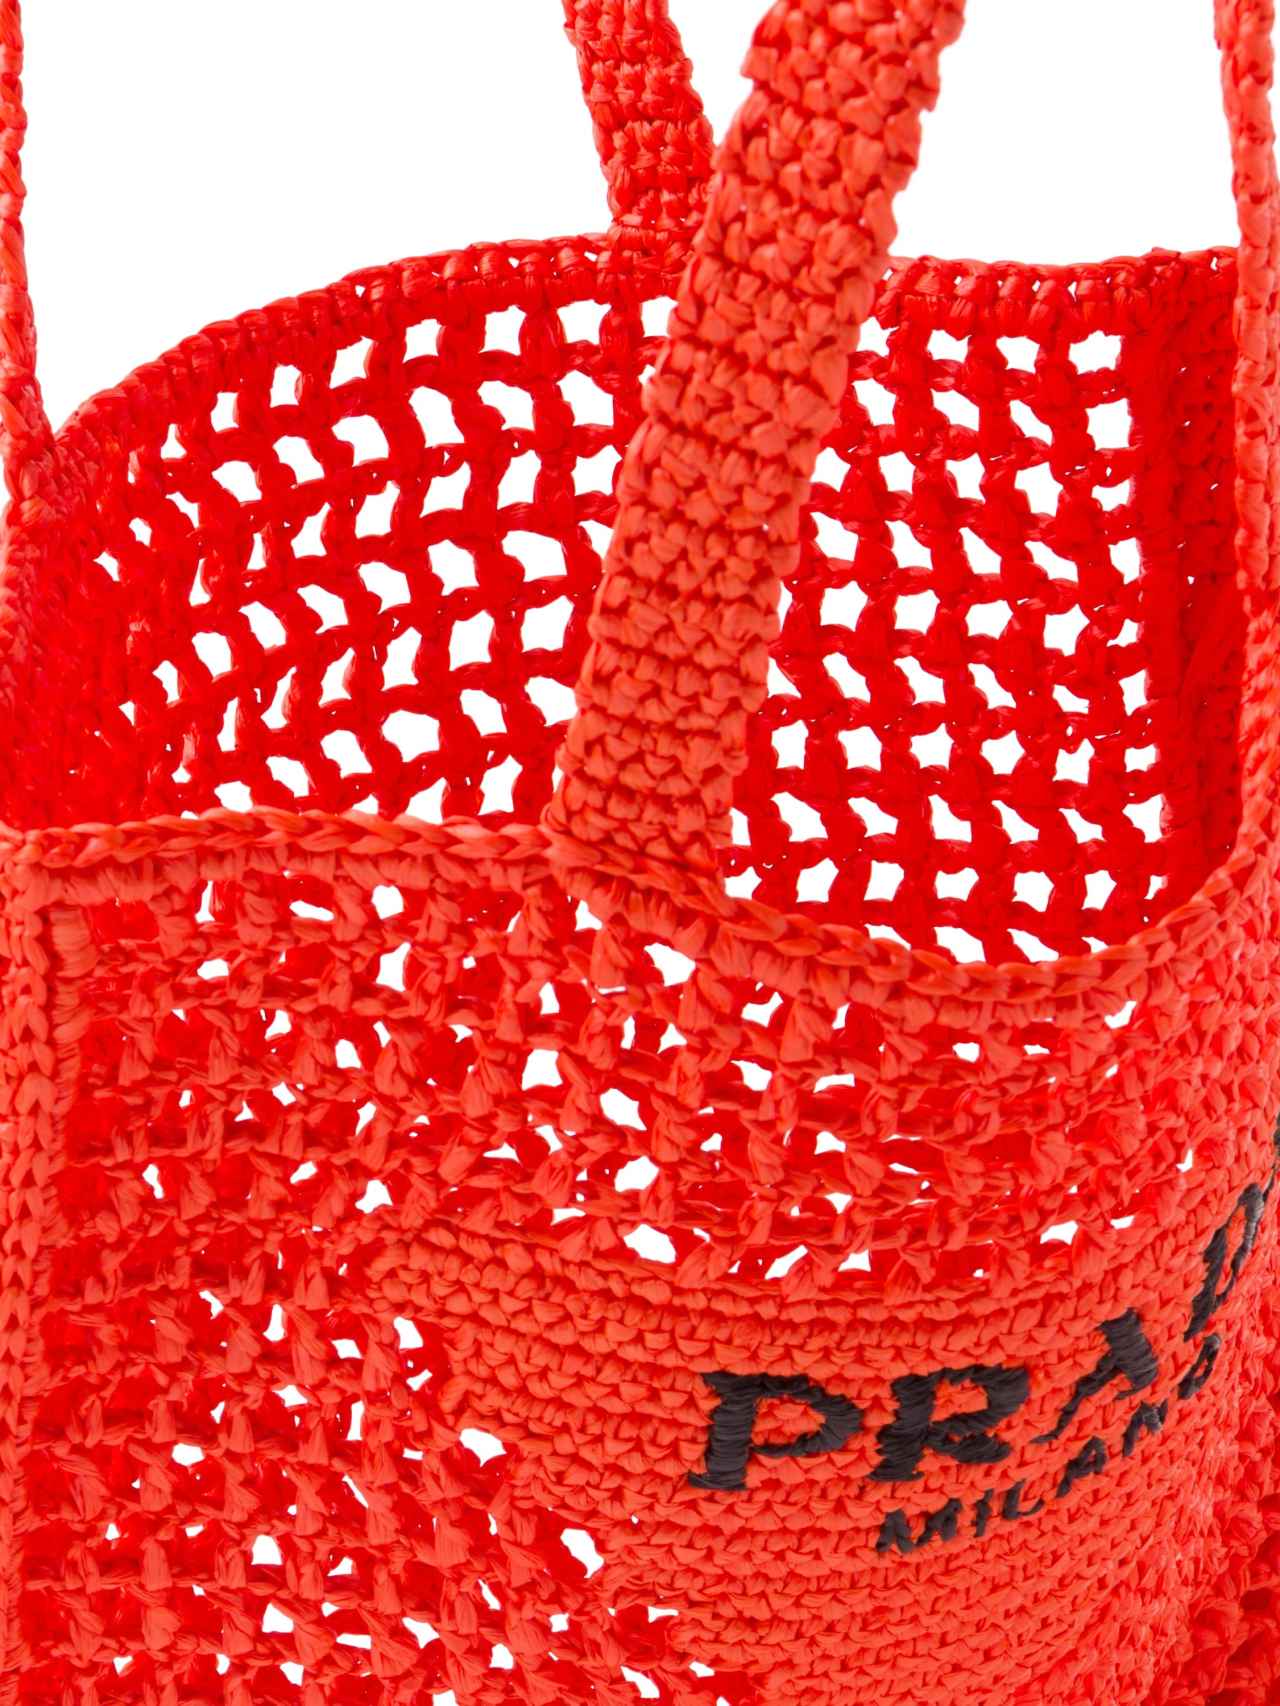 El exclusivo bolso de Prada que podrás llevar a la playa